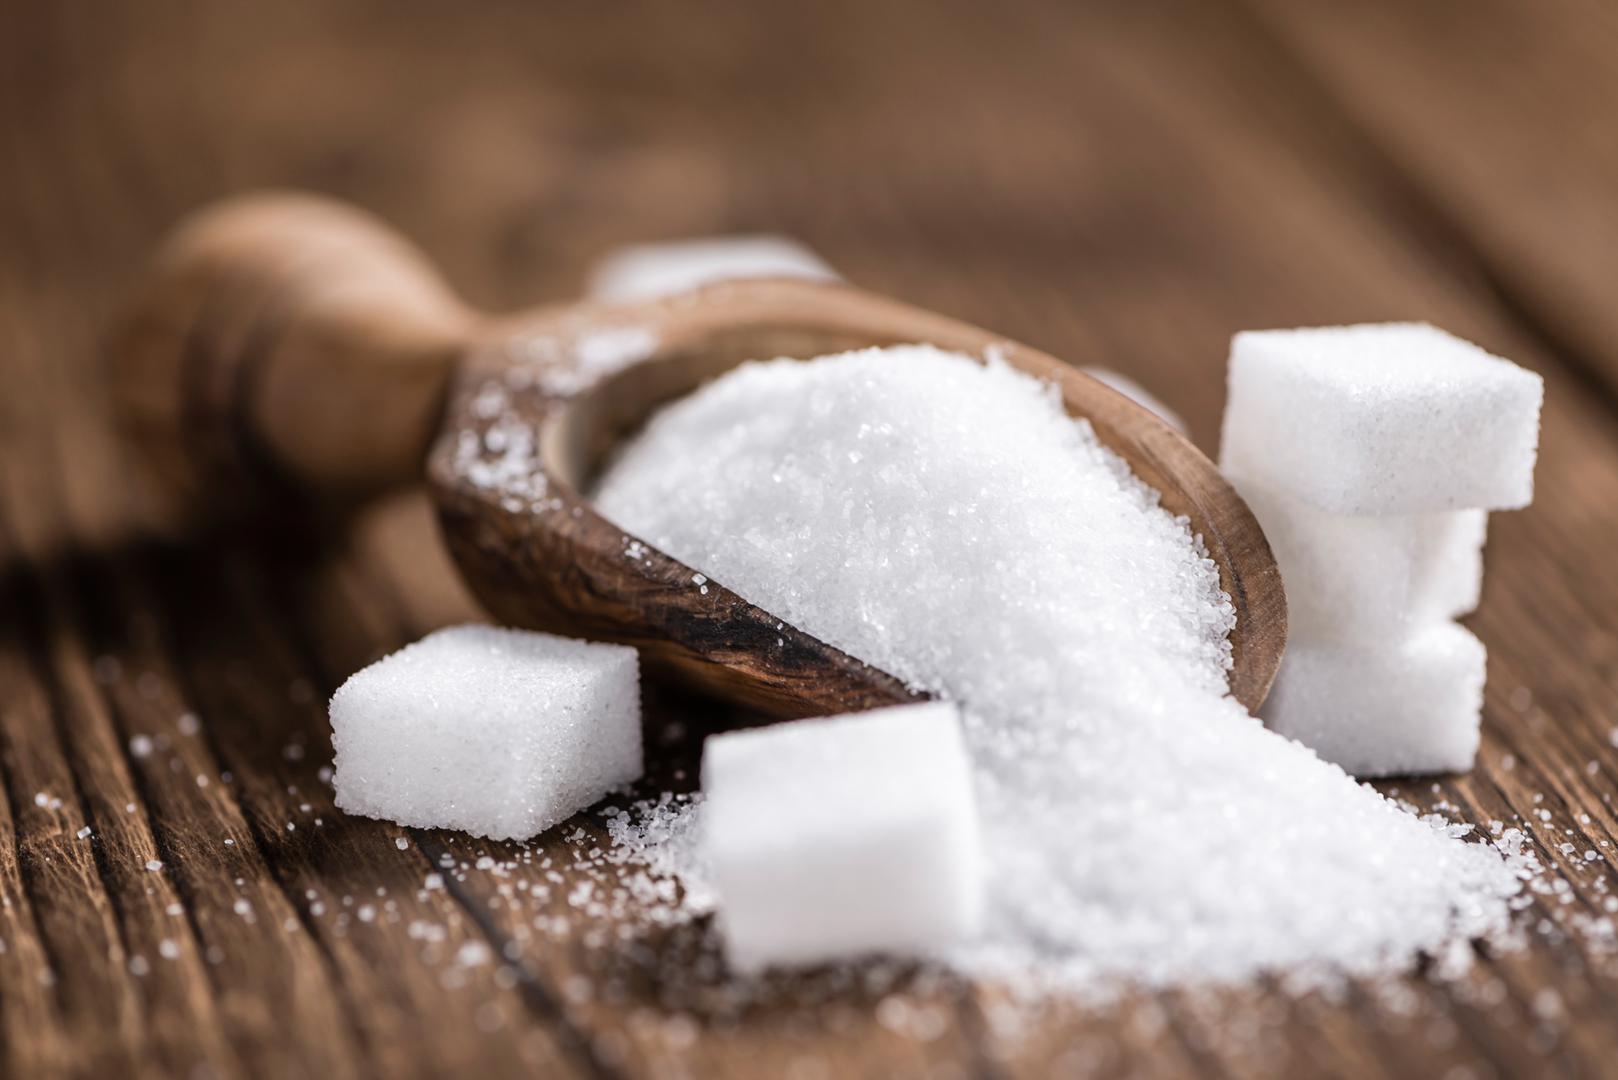 Ako vam se zgrudao šećer u posudi, dodajte komade bijelog kruha koji će na sebe povući vlagu i otpustiti zrnca šećera